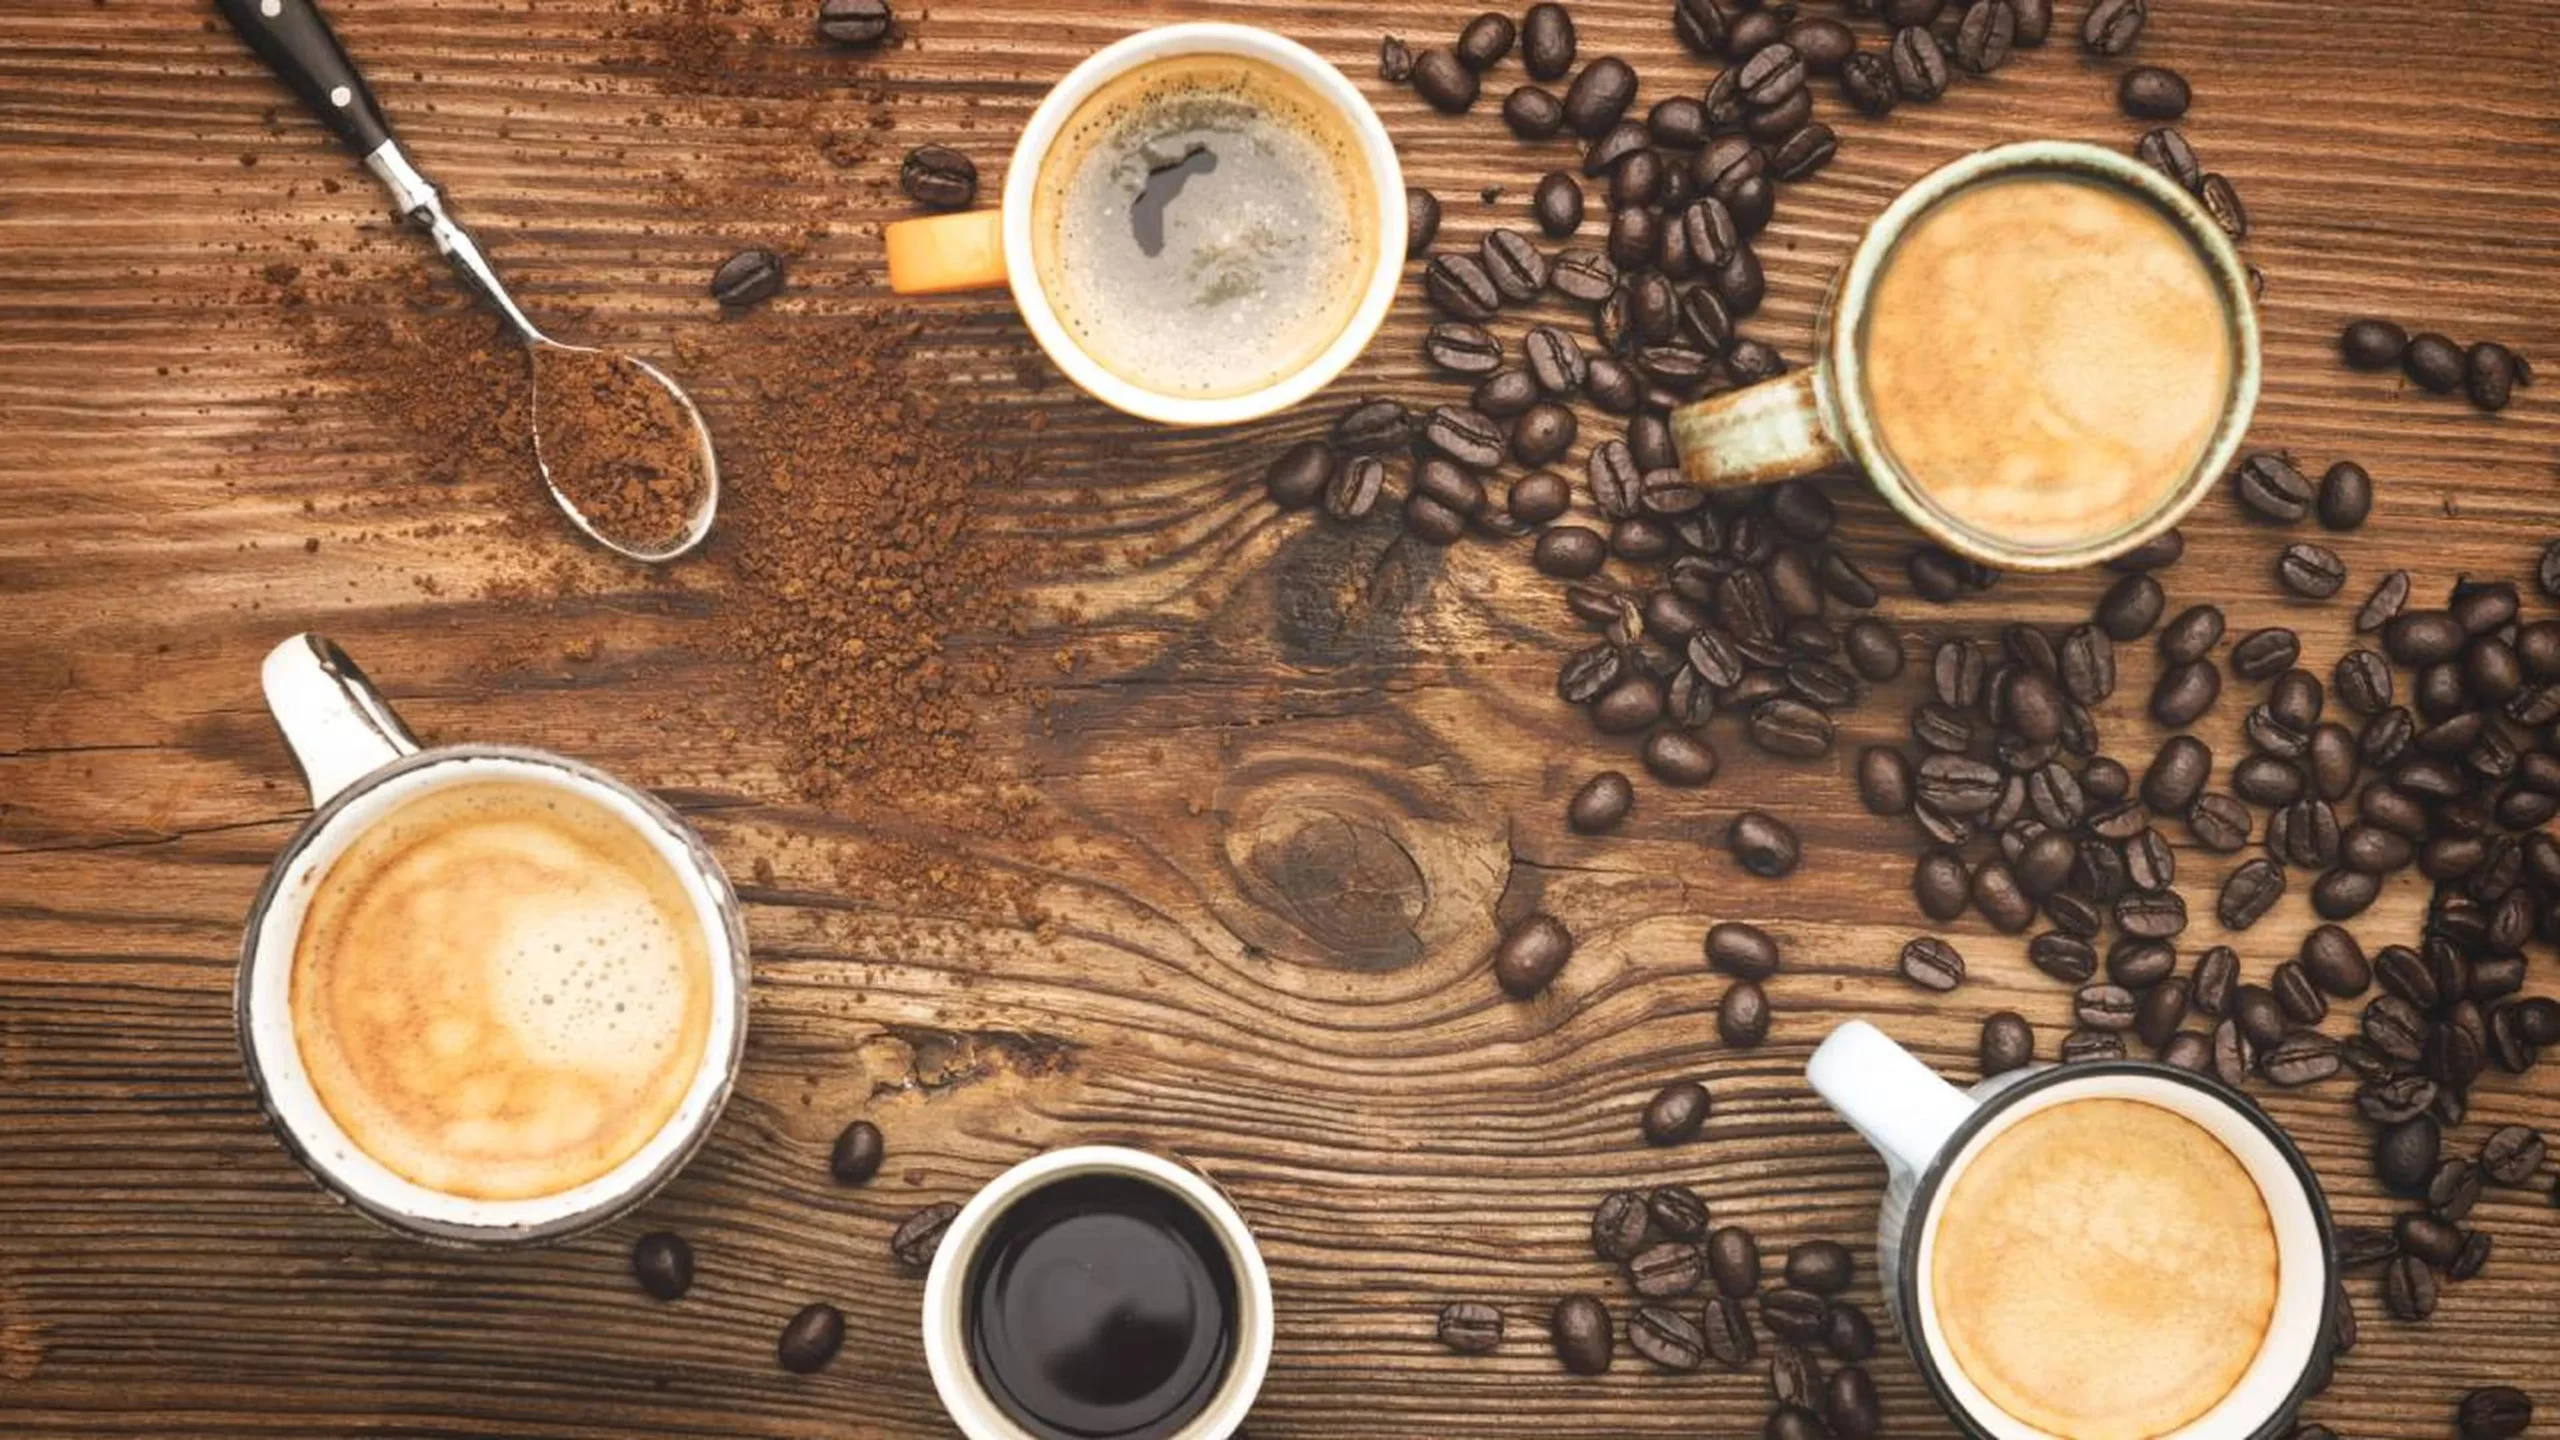 el café puede alterar los efectos de los medicamentos - Qué efecto tiene la cafeína en los medicamentos